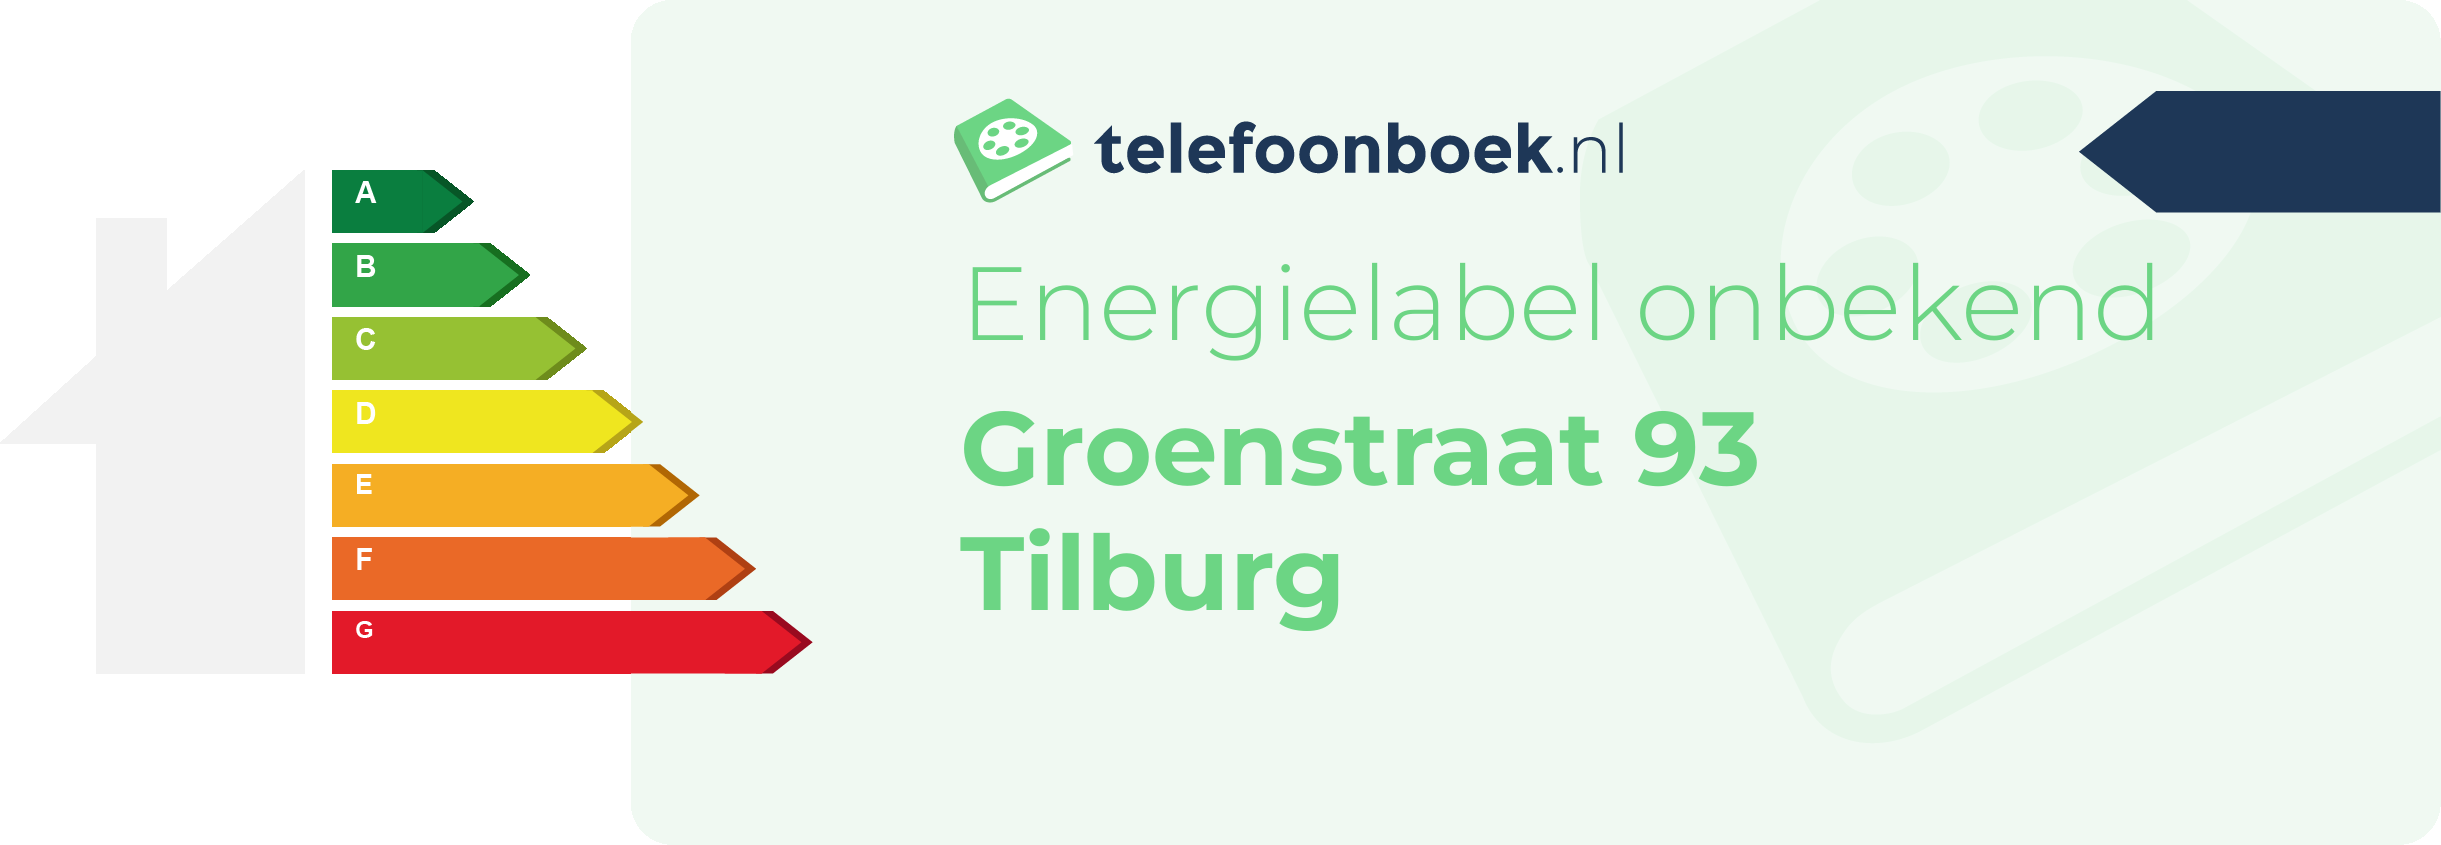 Energielabel Groenstraat 93 Tilburg